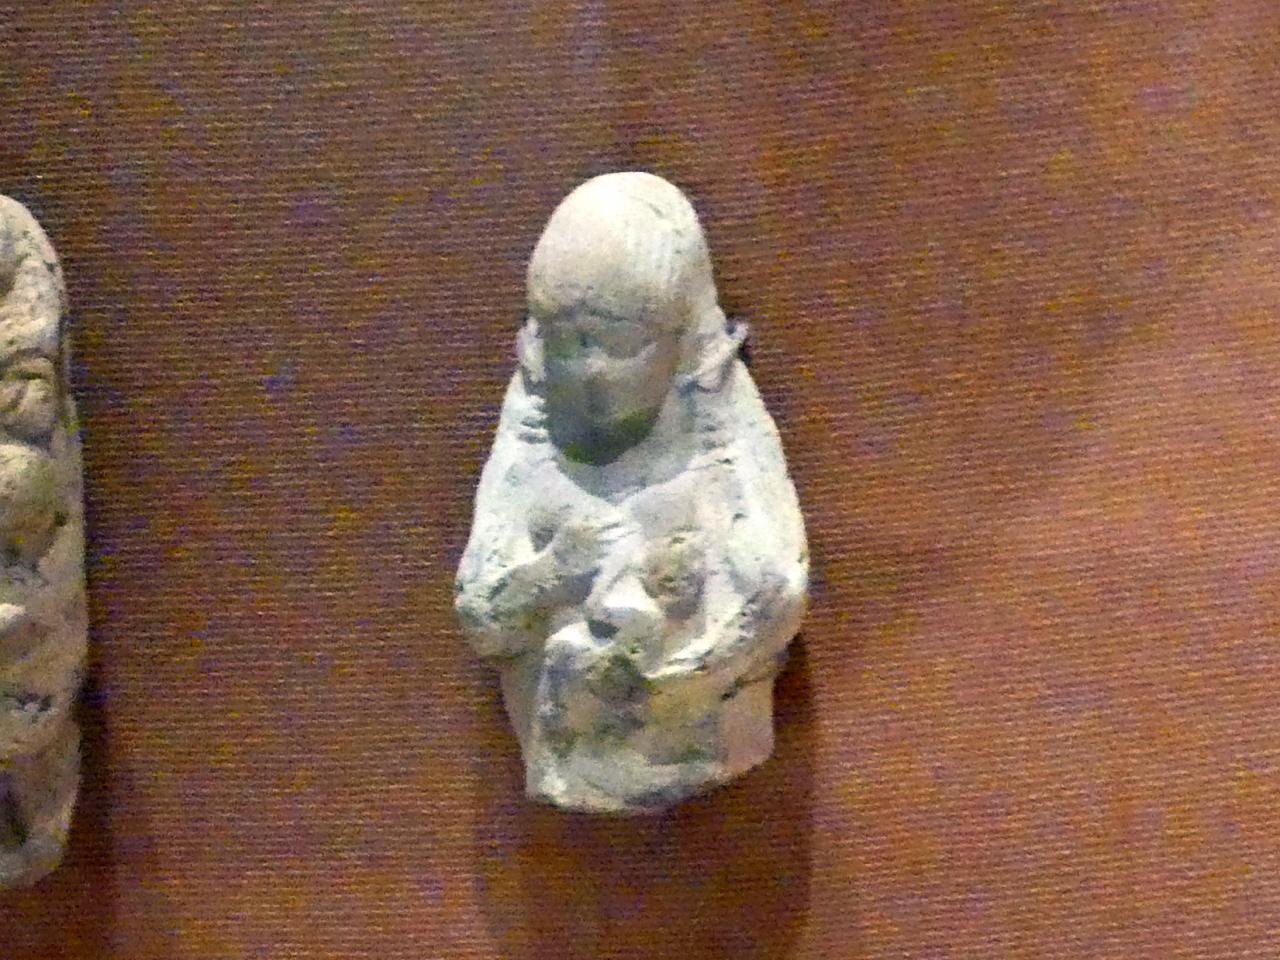 Frau mit Kind, Neubabylonische Zeit, 600 - 400 v. Chr., 600 - 500 v. Chr., Bild 1/2